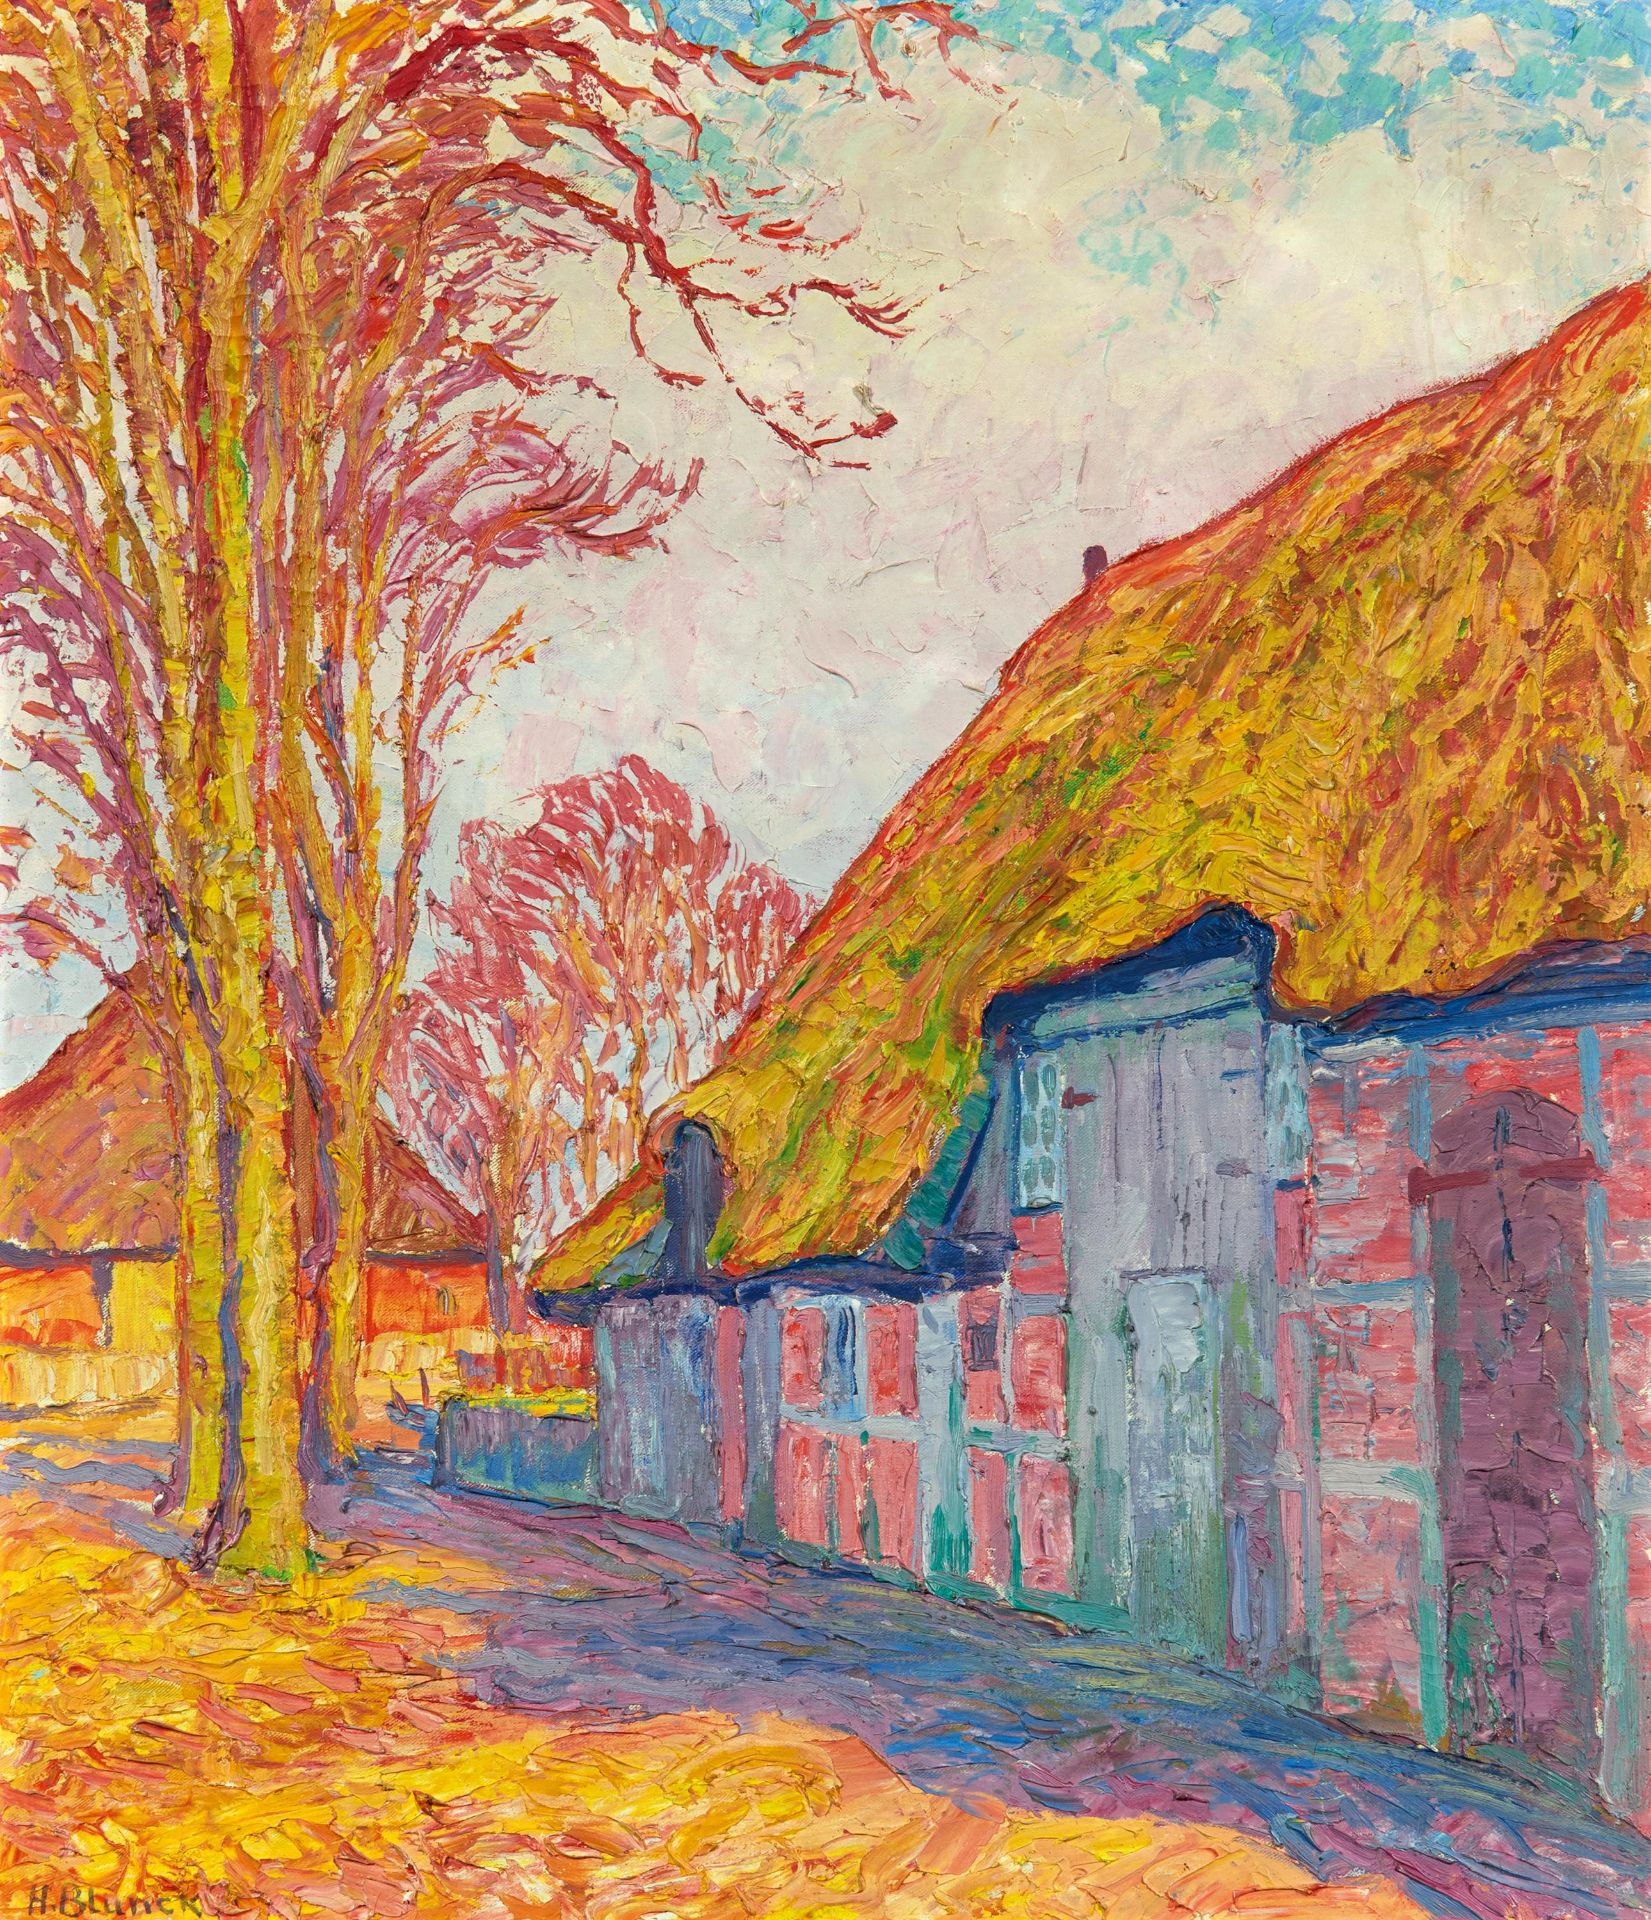 Blunck-Heikendorf, Heinrich Kiel 1891 - 1963 Ohne Titel (Hofansicht). Öl auf Leinwand. 70 x 60cm.